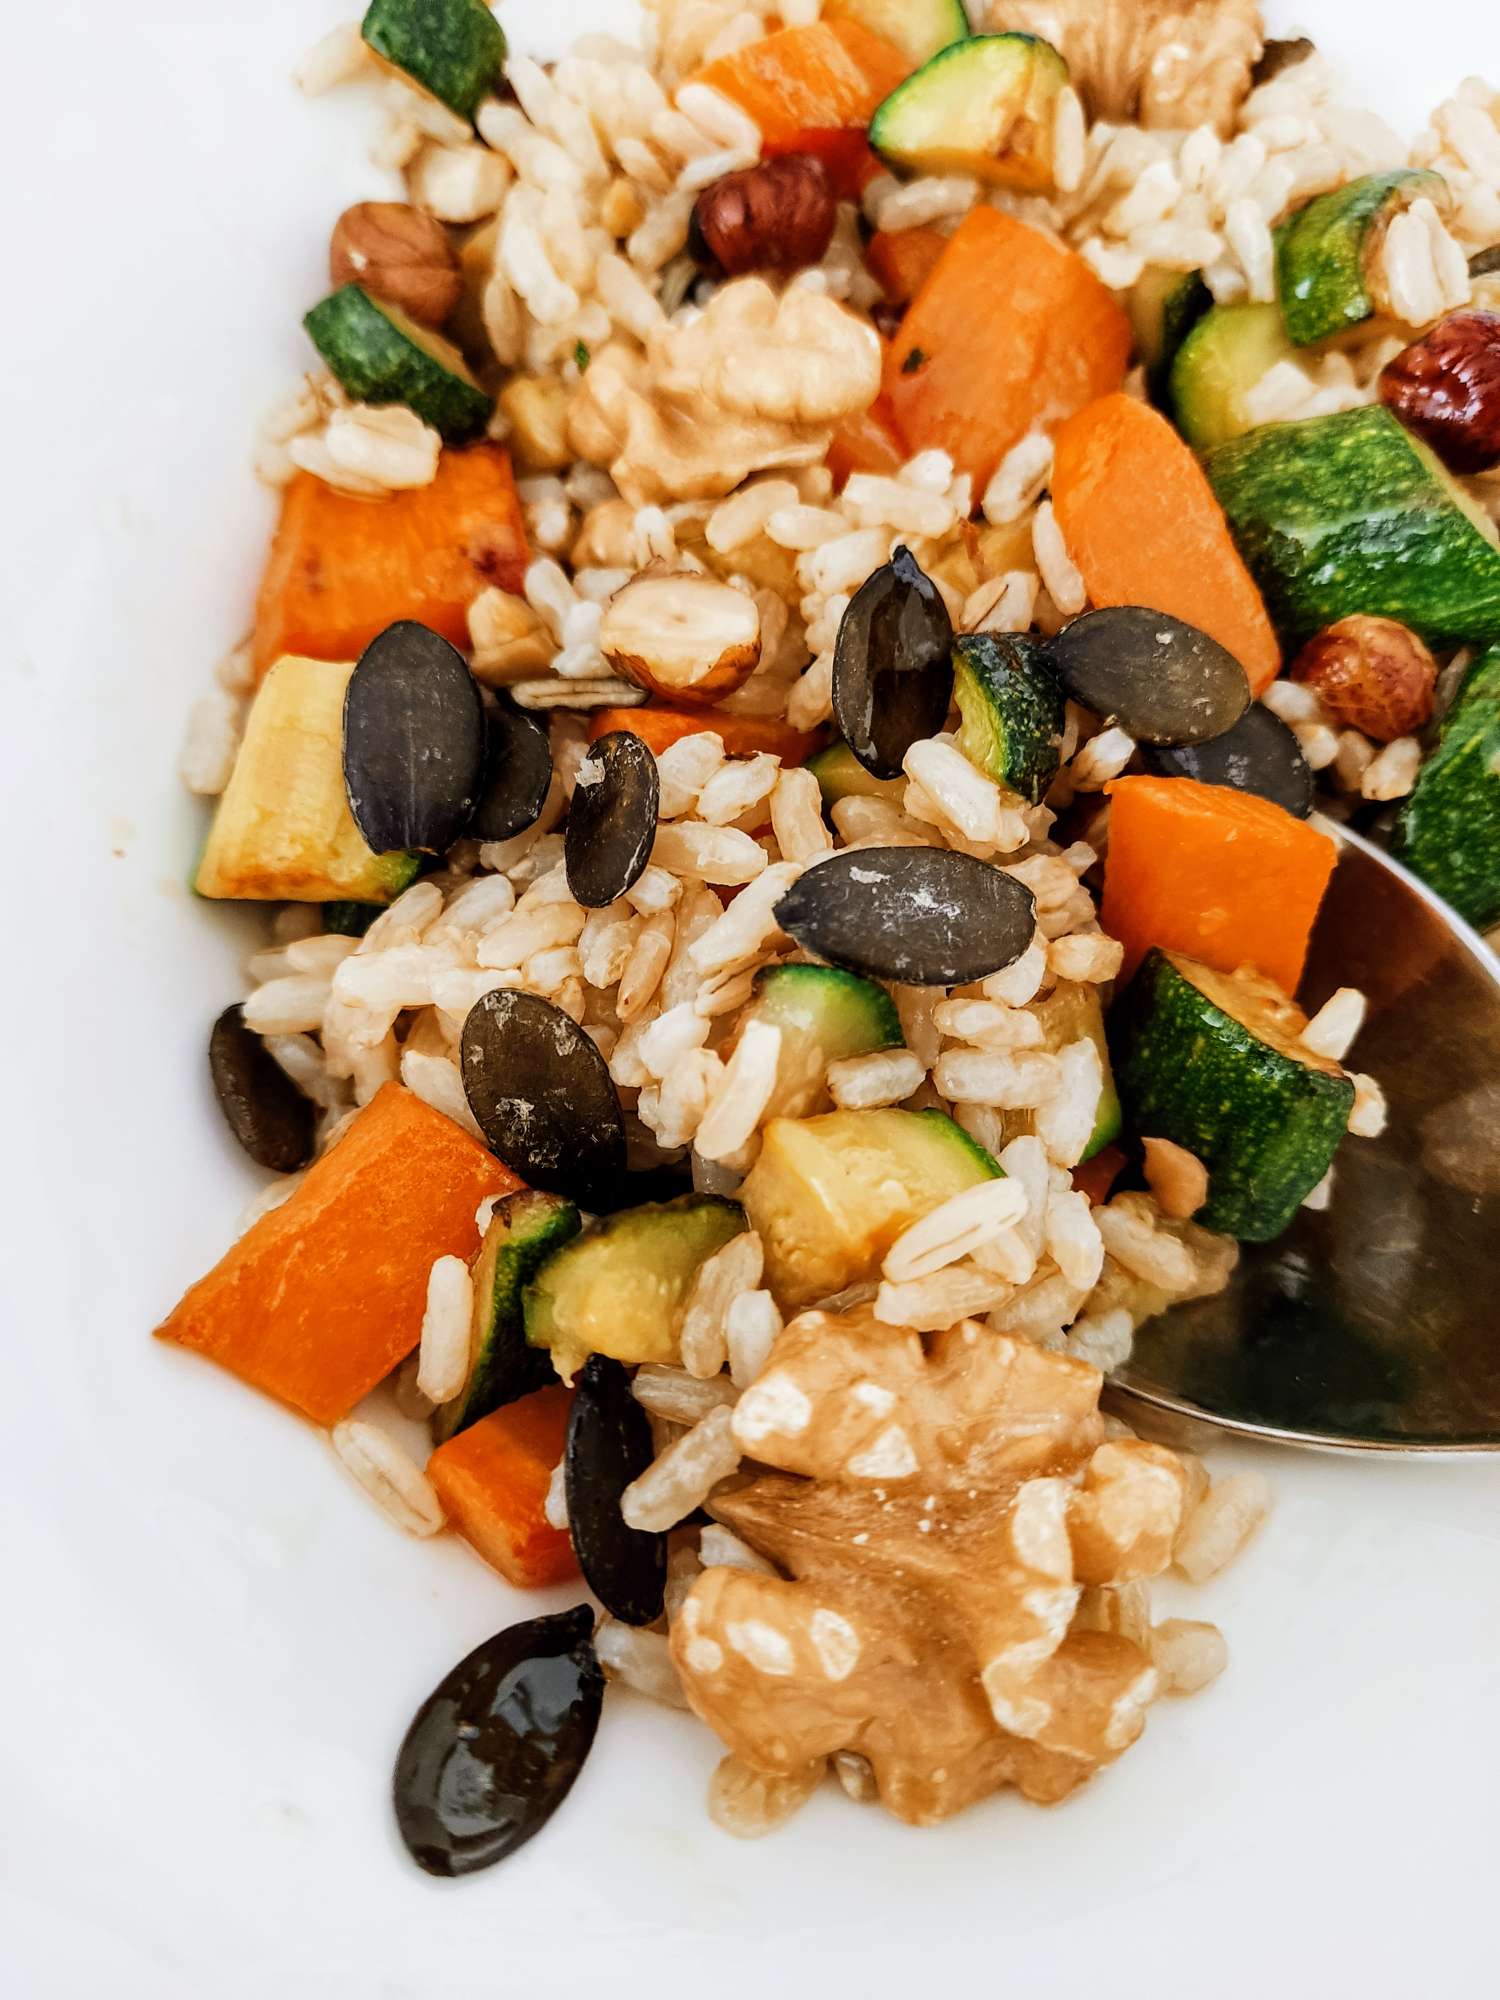 Insalata di riso integrale vegana con verdure croccanti e frutta secca